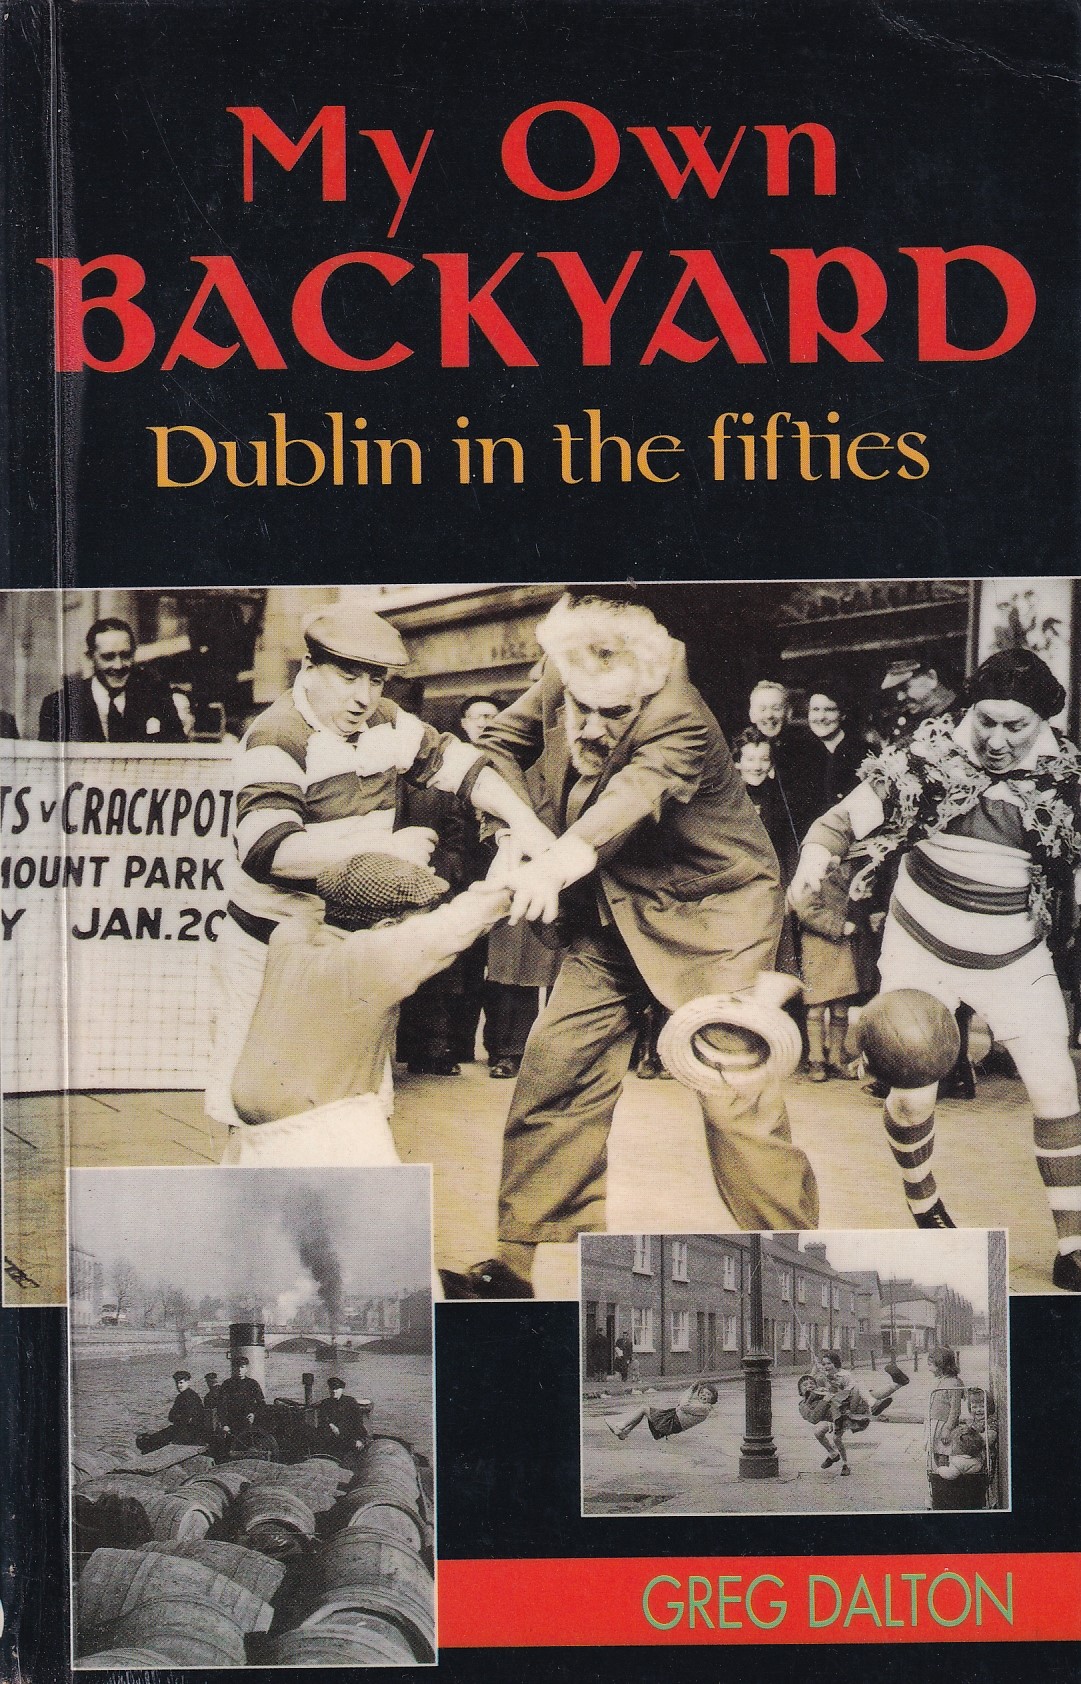 My Own Backyard: Dublin in the 1950’s by Greg Dalton